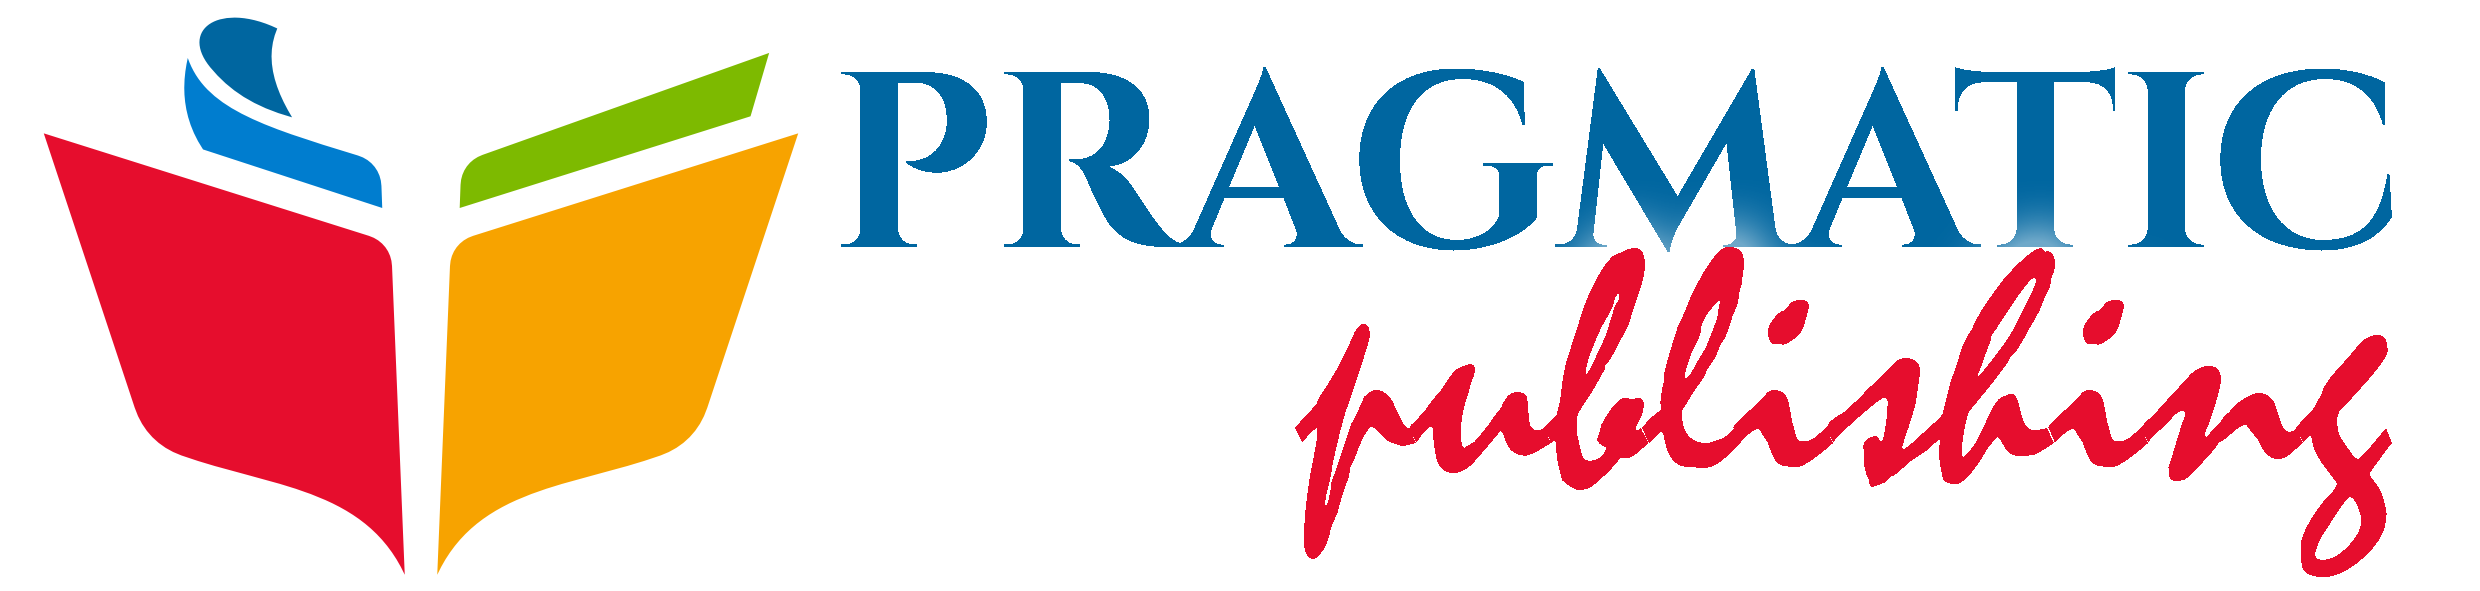 Pragmatic Publishing-Magazin de carte originala romaneasca. Editura ideilor originale si a autorilor debutanti.